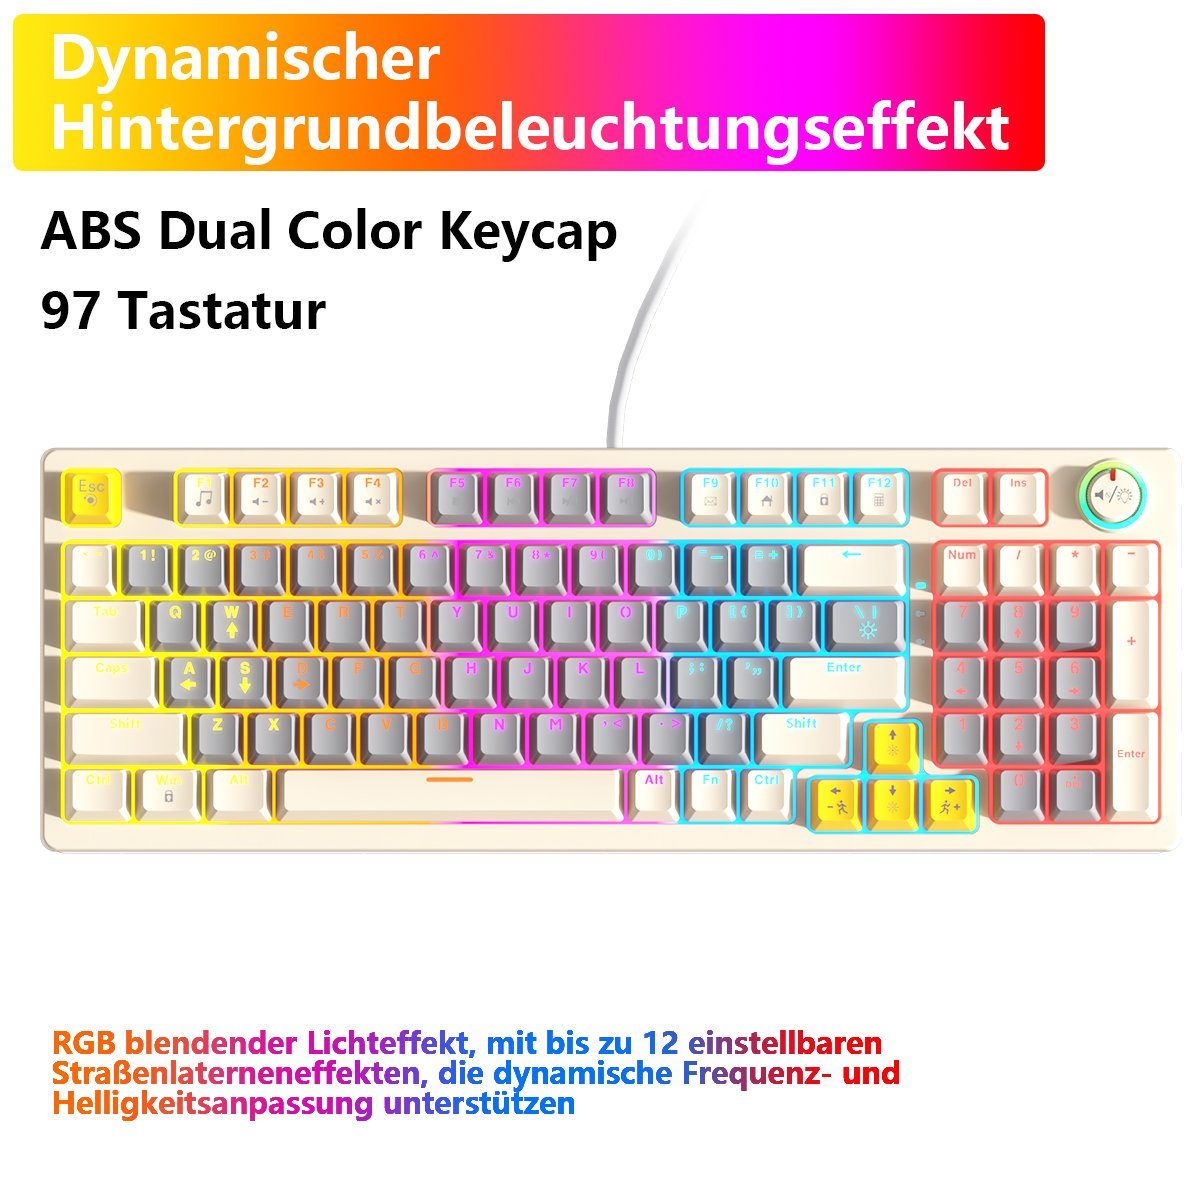 BUMHUM Nicht deutsche Tastatur Echte mechanische Tastatur,RGB-Beleuchtung Gaming-Tastatur (Zweifarbige Doppel- und Dreifarbige RGB-Gaming-Tastatur mit Kabe) Weiß